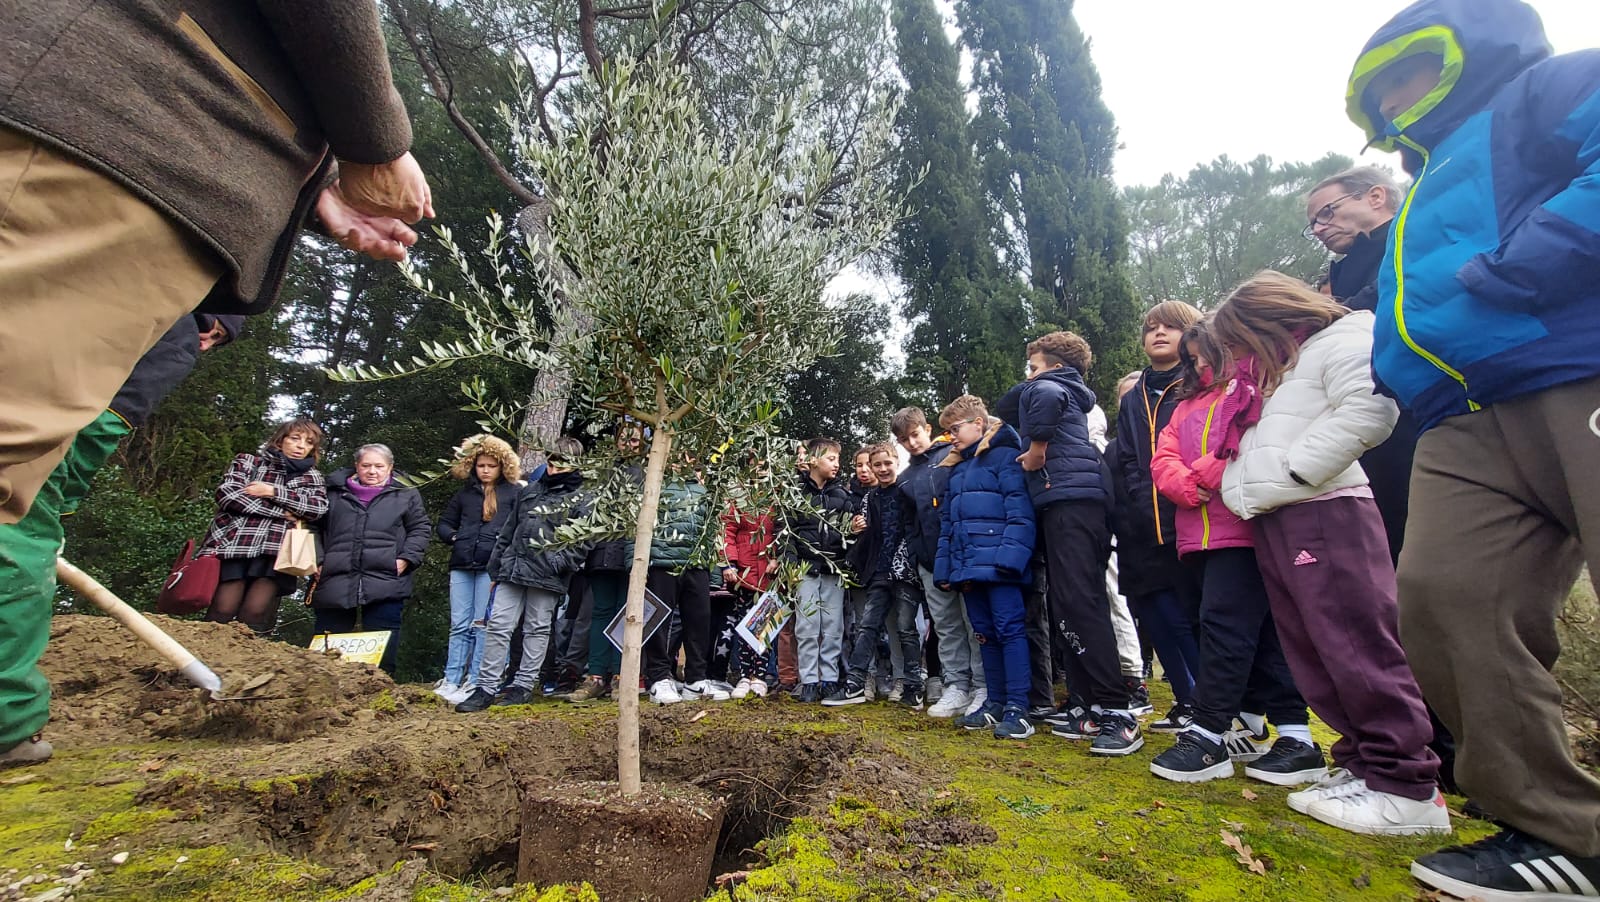 L'olivo della legalità piantato a Suvignano, luogo simbolo della lotta contro le mafie